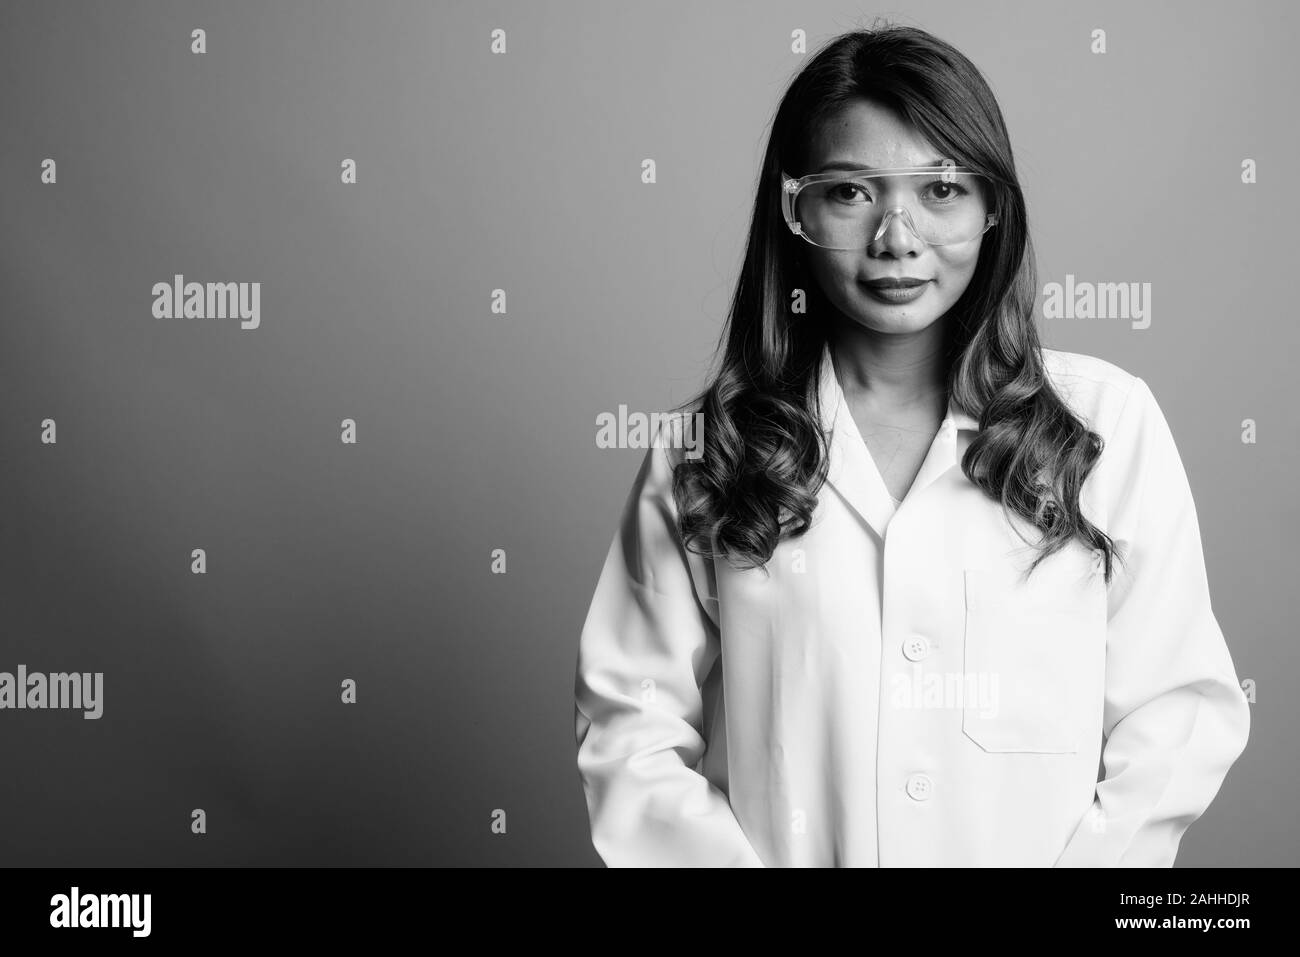 Portrait of Asian woman médecin comme chercheur scientifique à lunettes de protection Banque D'Images